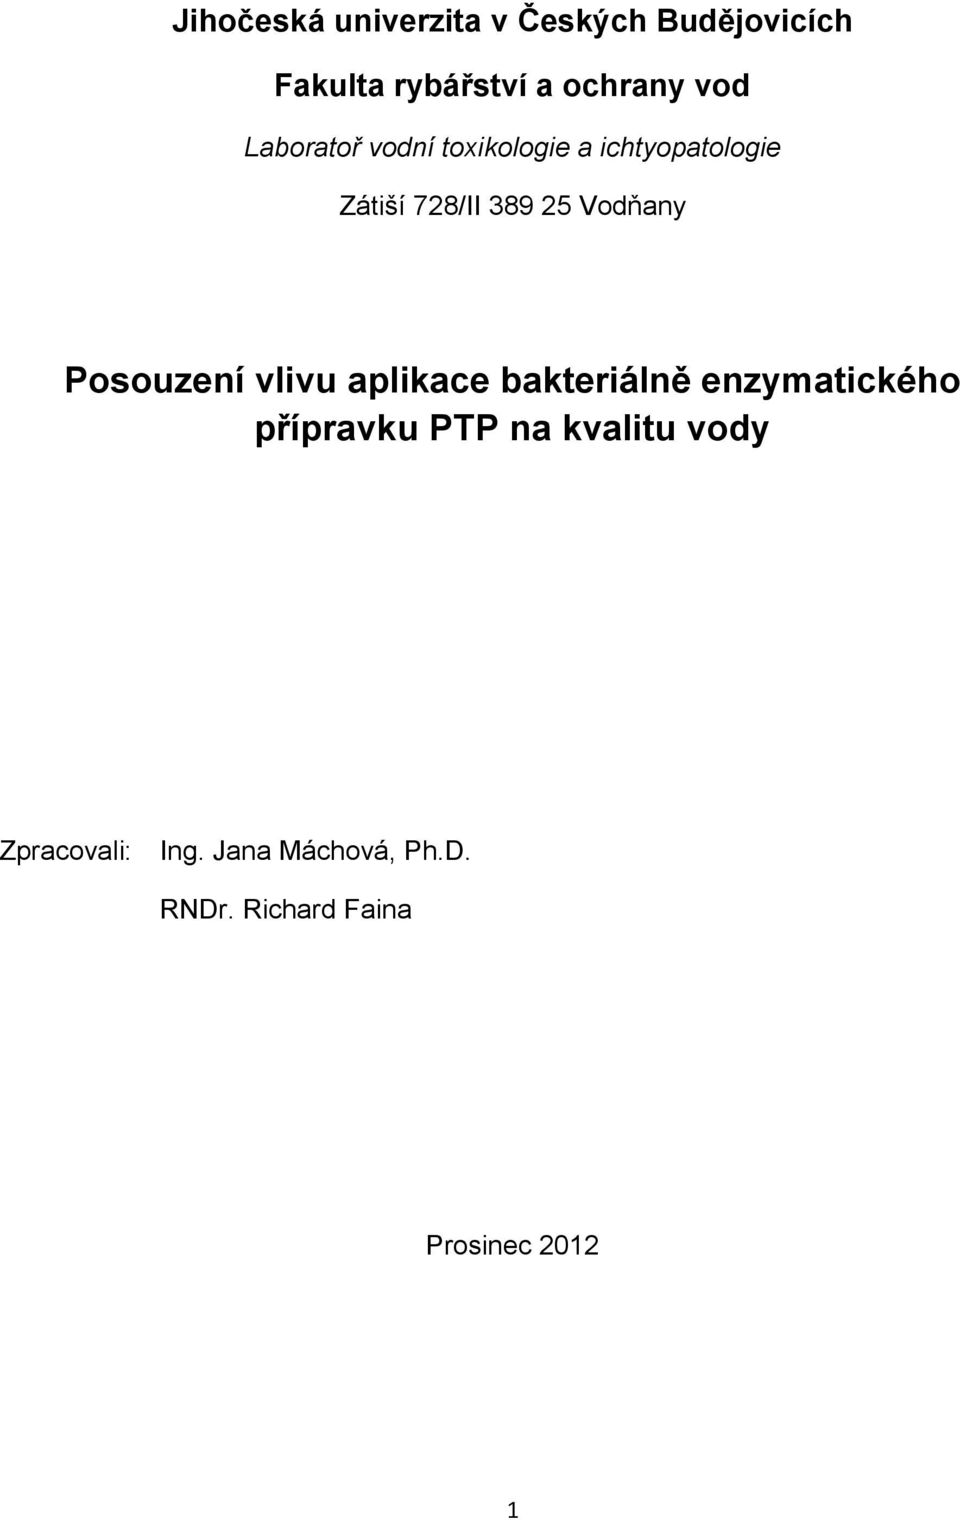 Posouzení vlivu aplikace bakteriálně enzymatického přípravku PTP na kvalitu